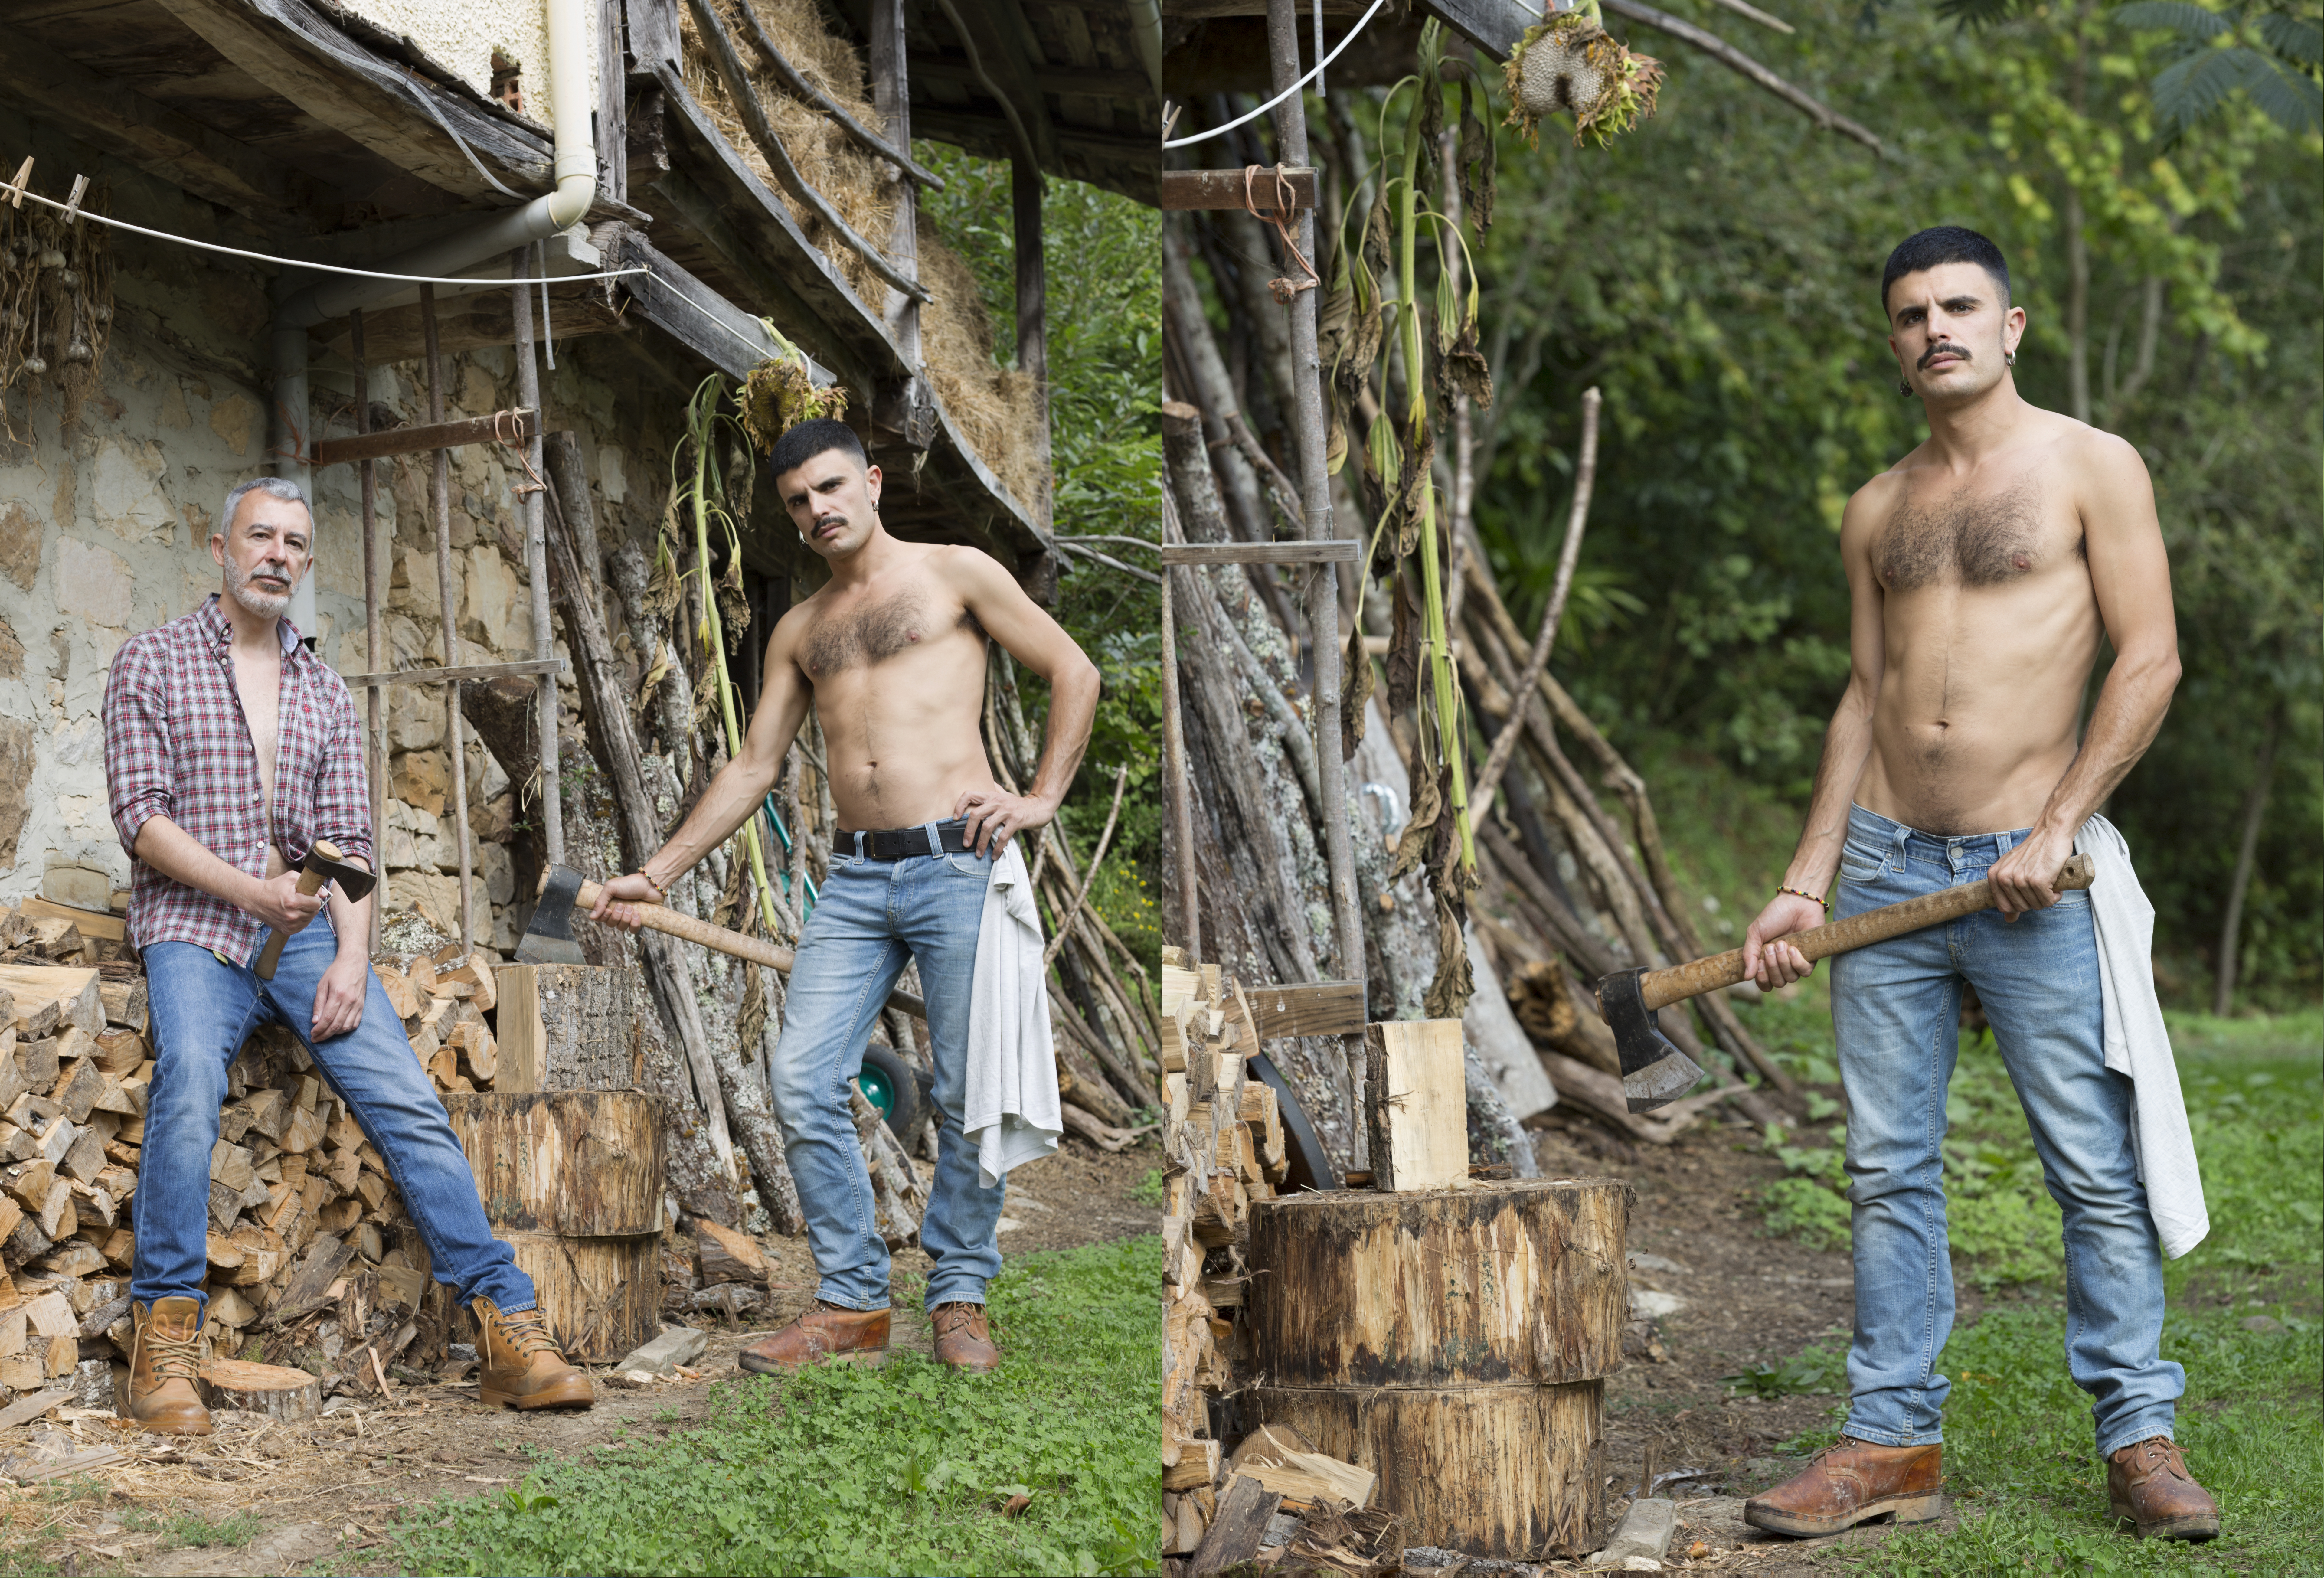 Paco Tomás y Rodrigo Cuevas se desnudan a lo 'Brokeback Mountain': "Nos chorrea la vanguardia"